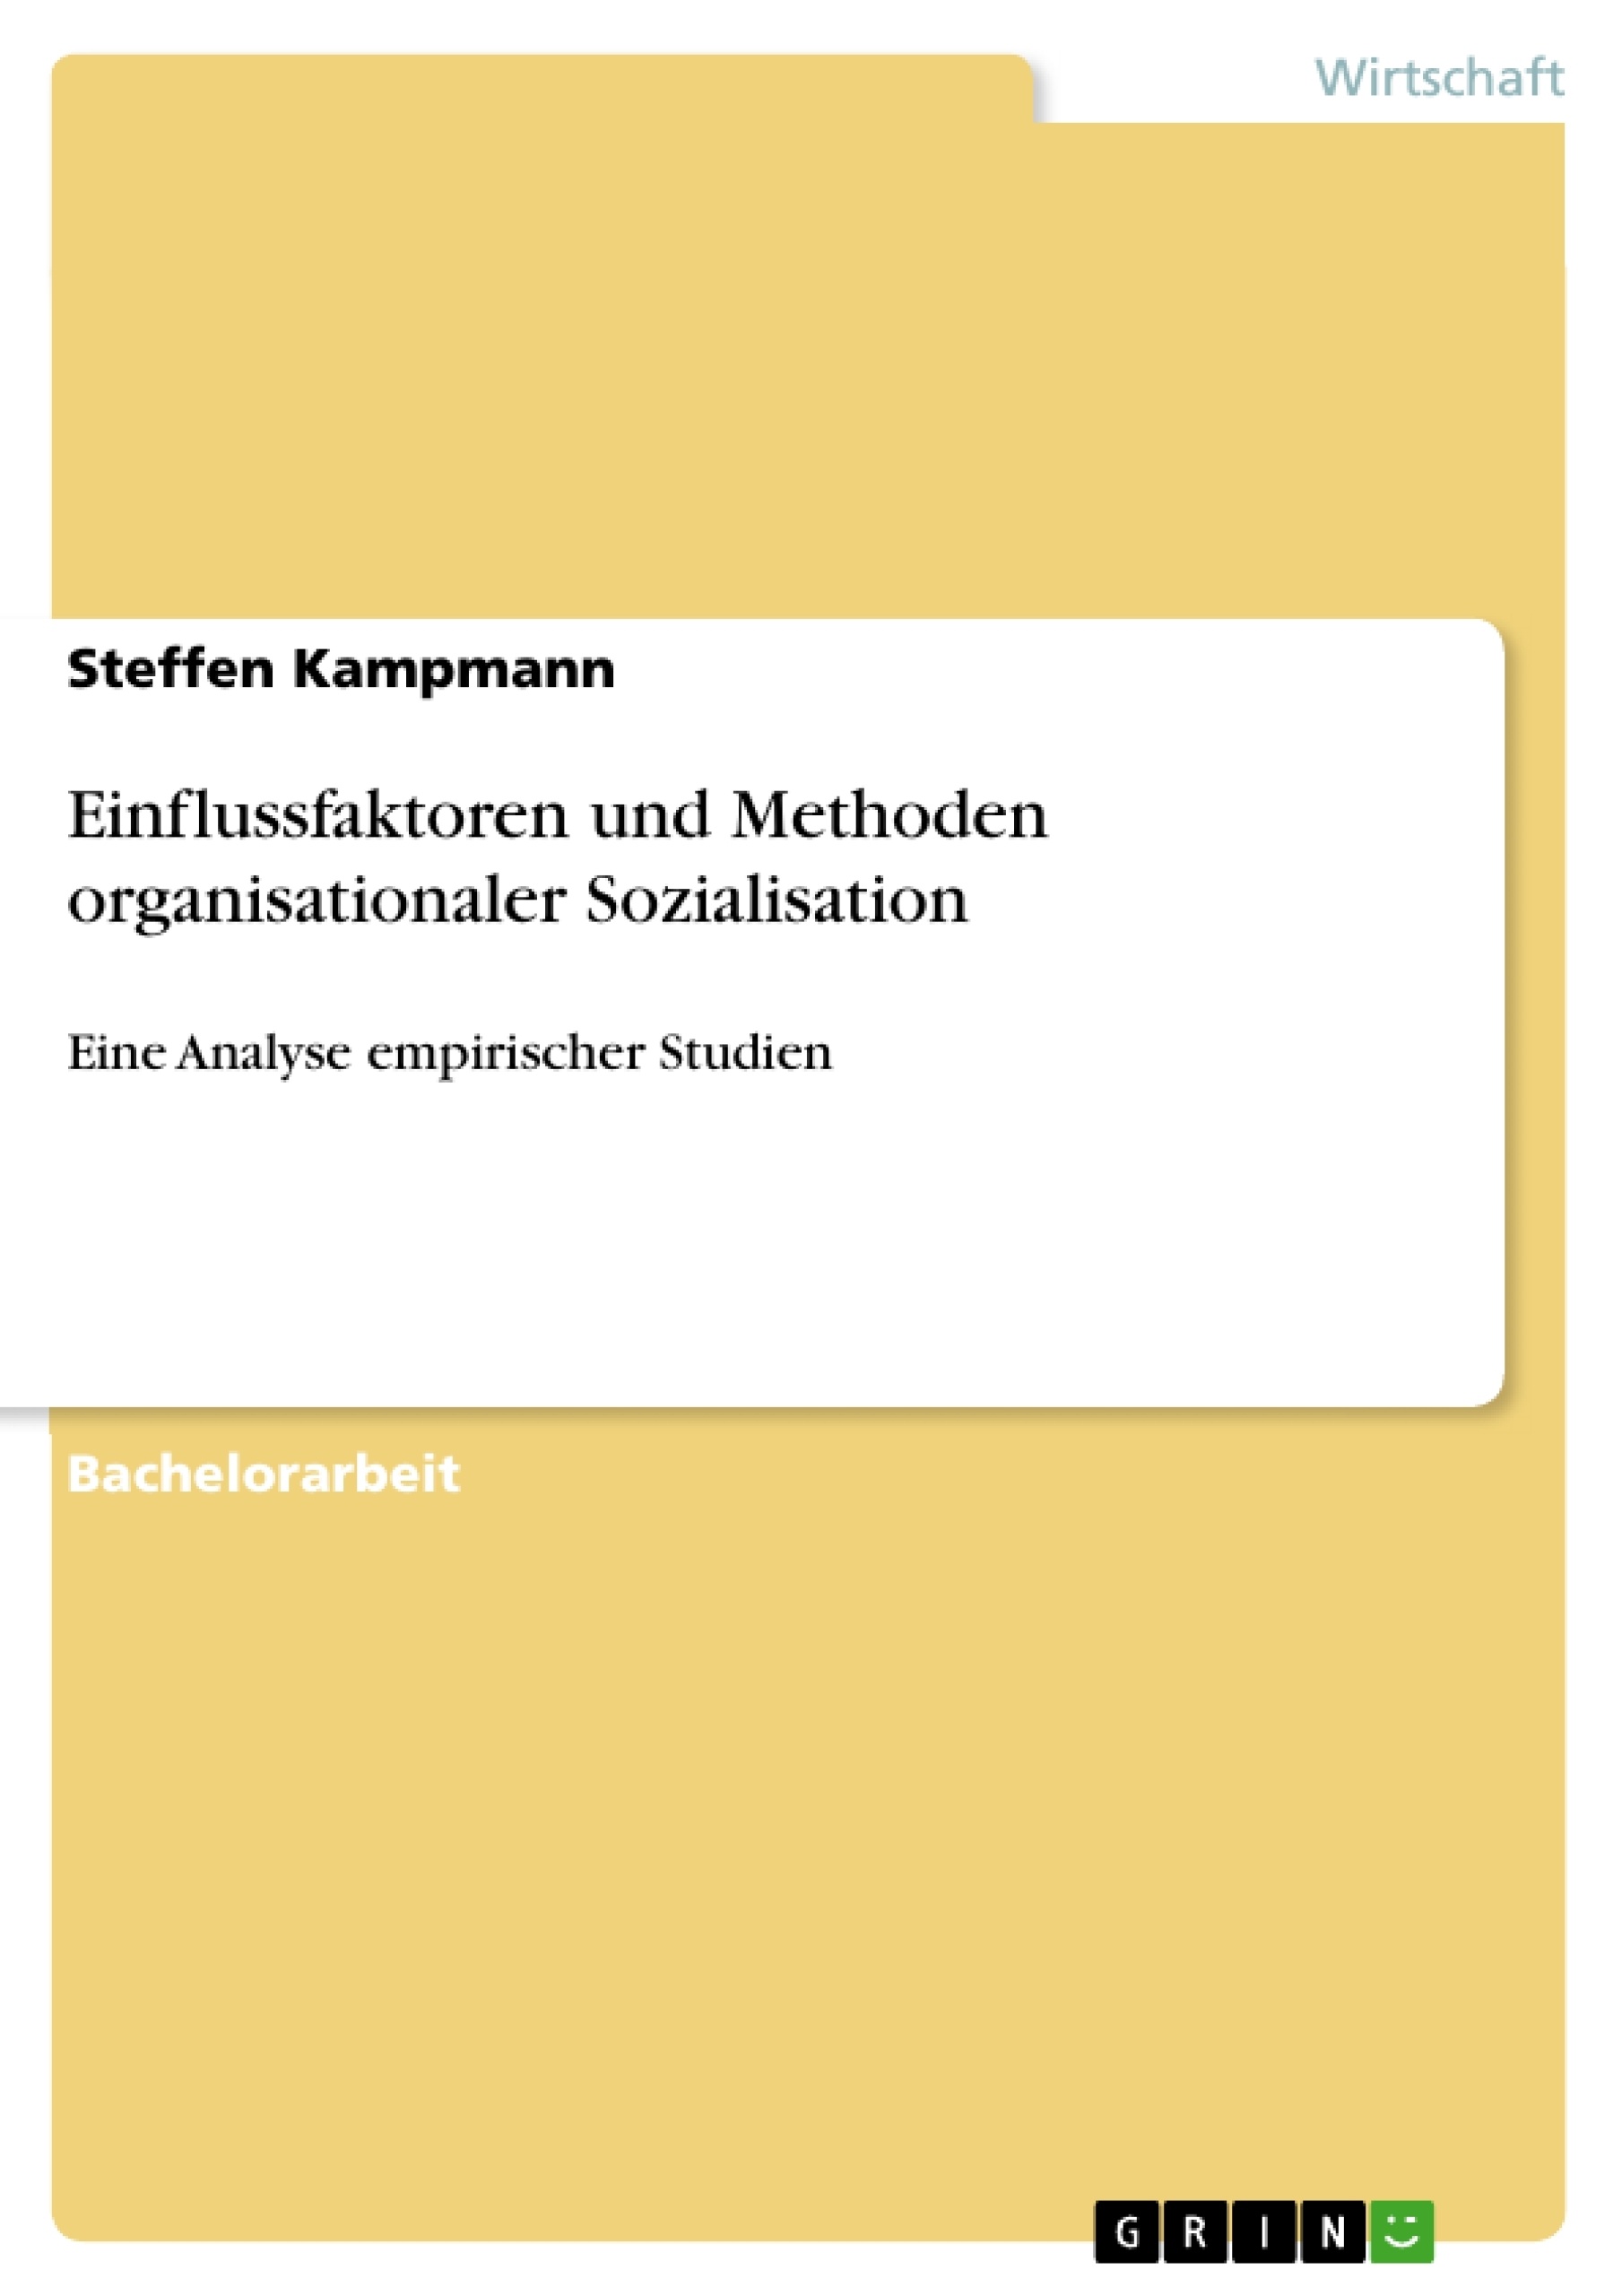 Title: Einflussfaktoren und Methoden organisationaler Sozialisation